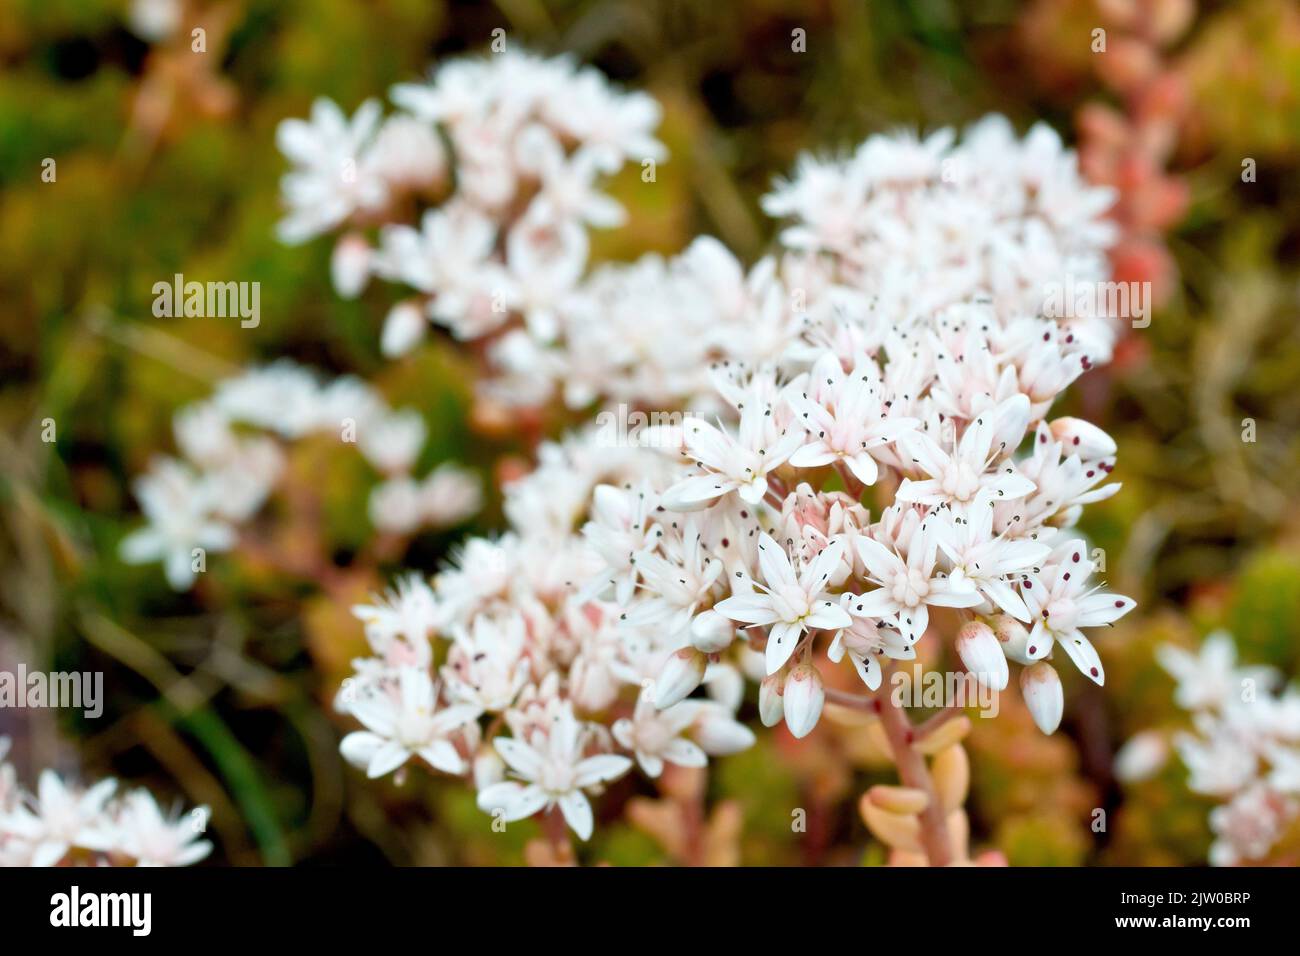 White Stonecrop (album del sedum), primo piano di un piccolo gruppo di fiori bianchi con profondità di campo limitata. Foto Stock